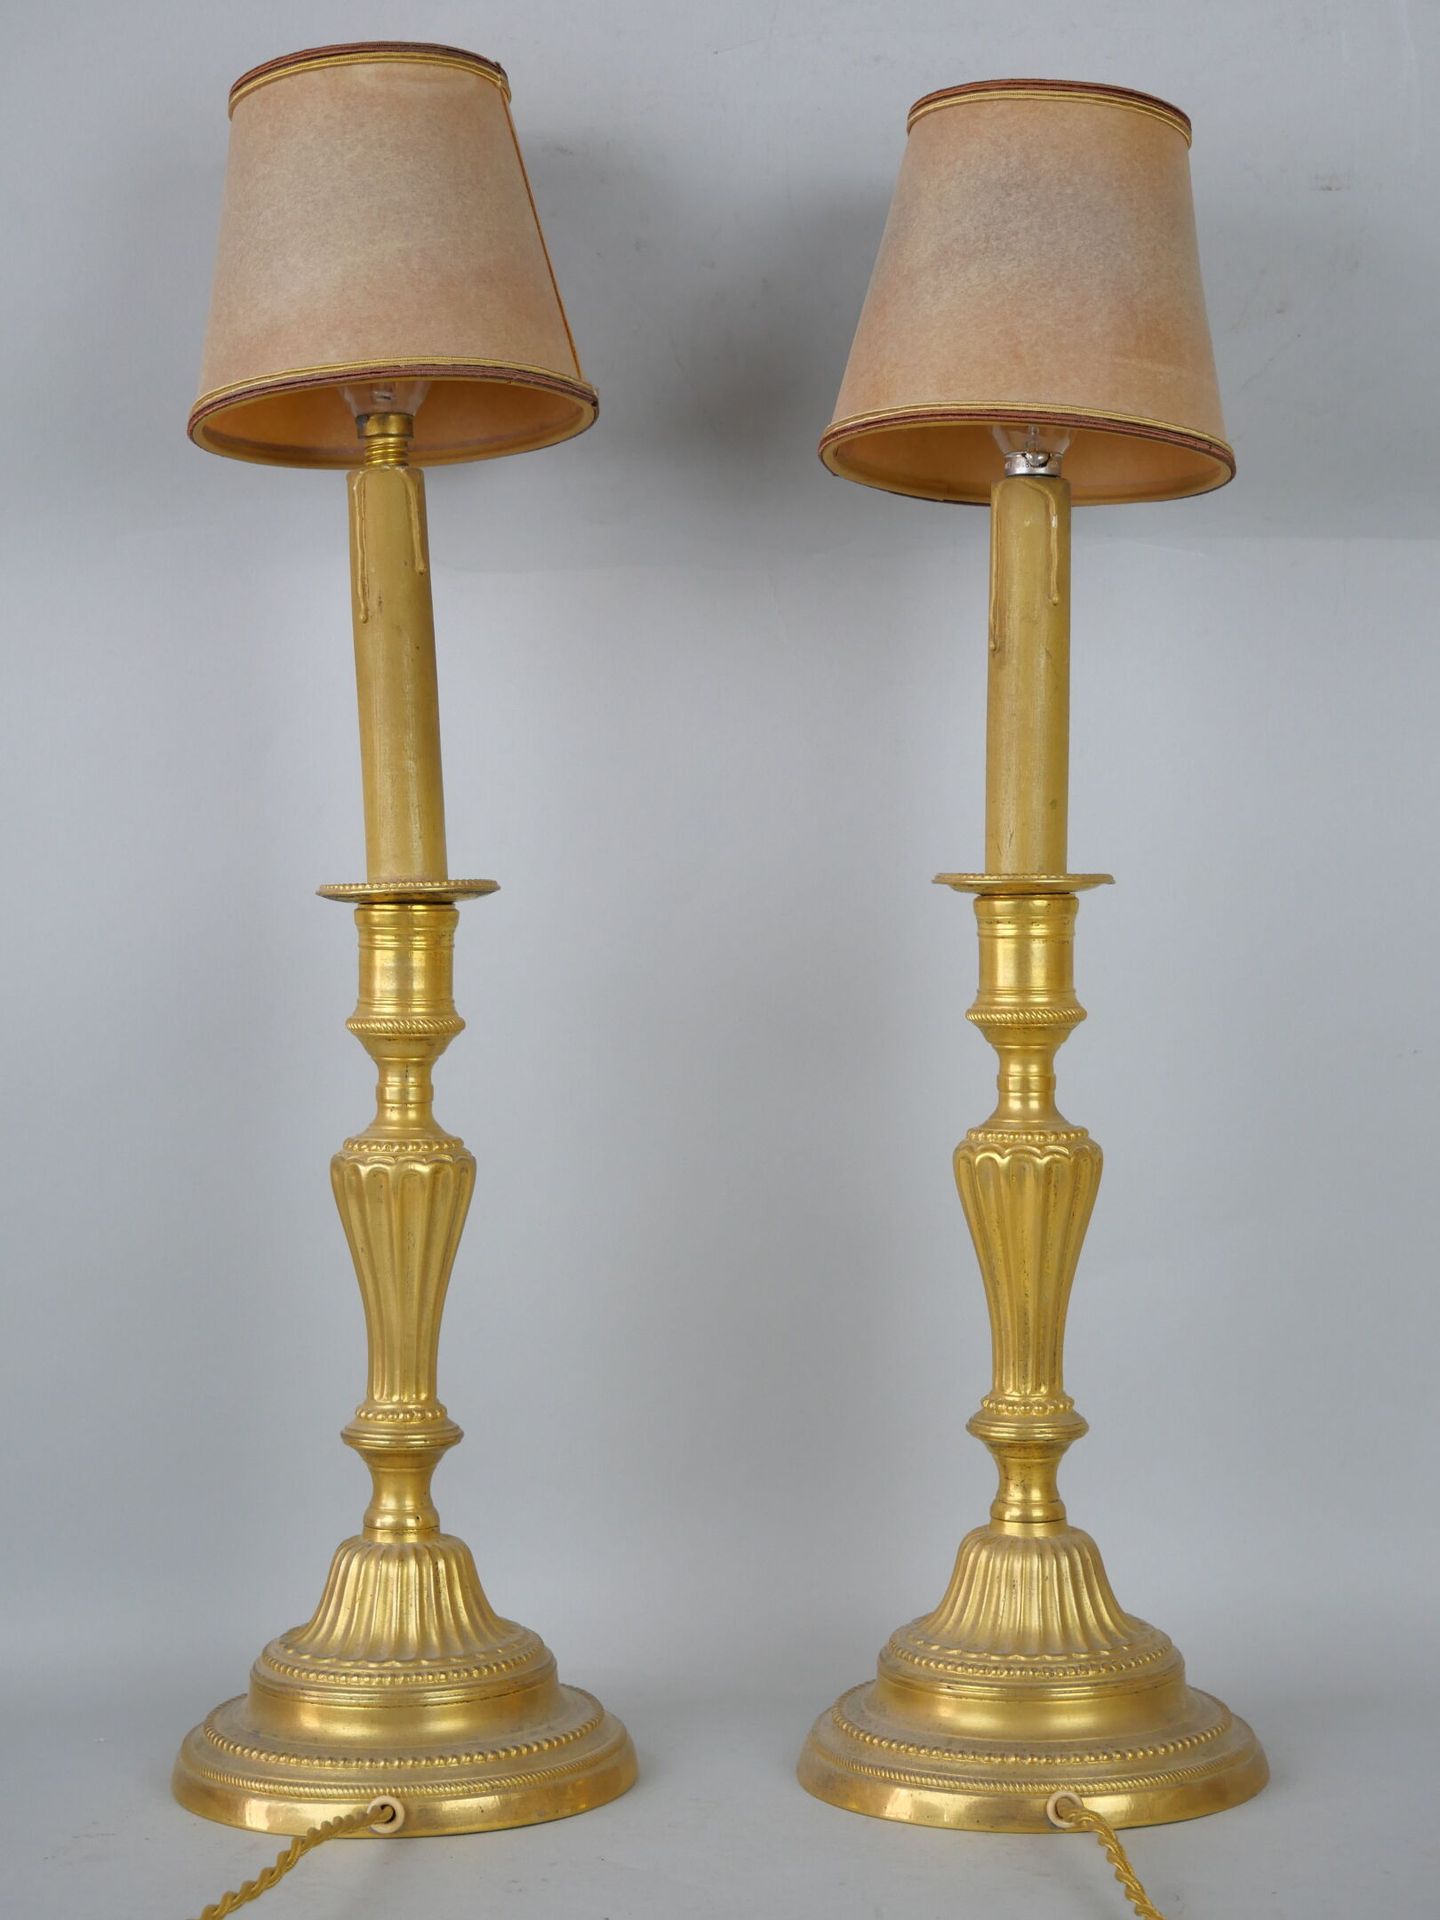 Null Paire de flambeaux en bronze doré.

Style Louis XVI, époque XIXe siècle.

(&hellip;